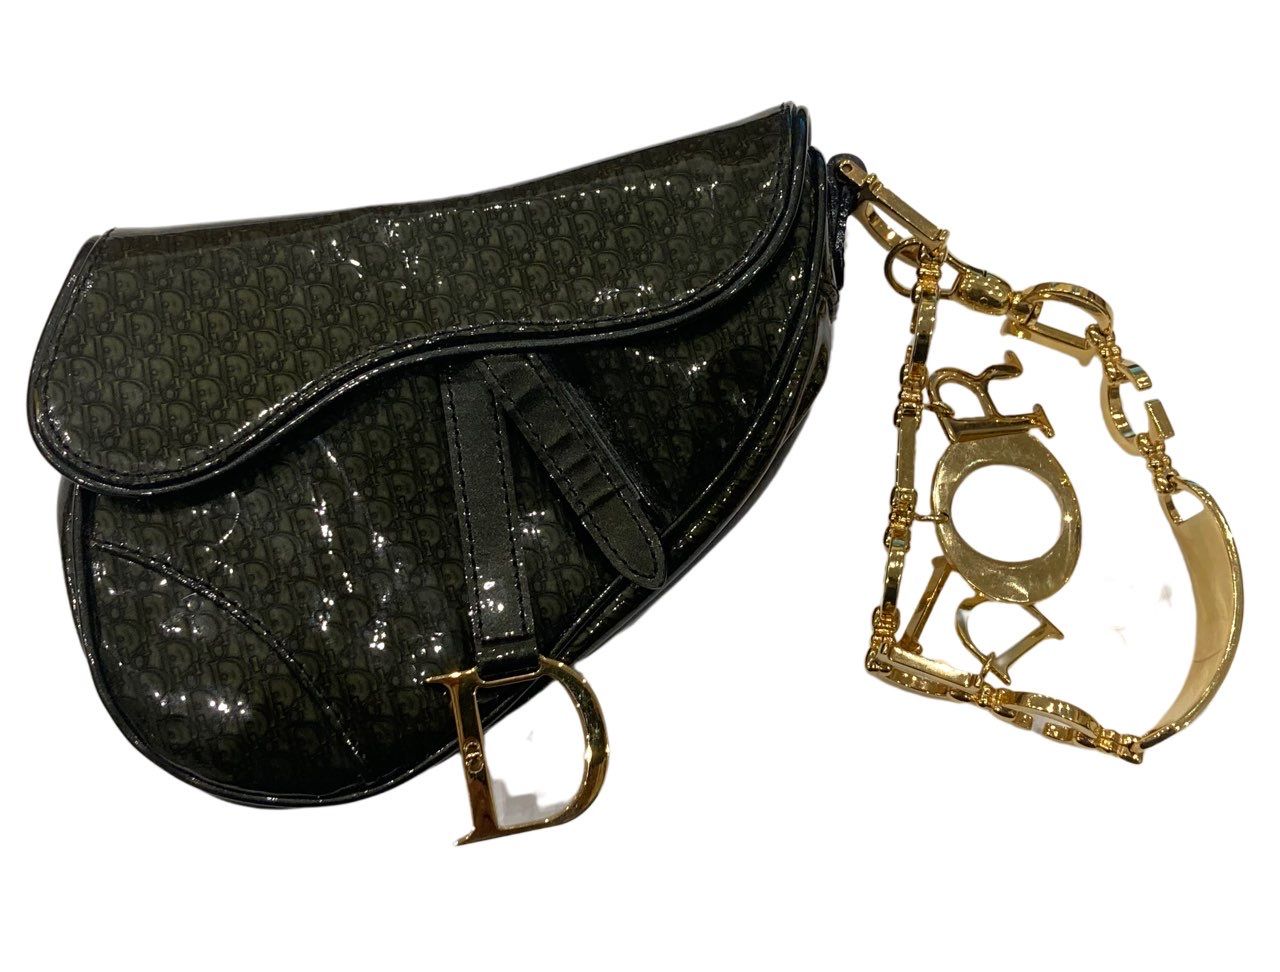 Christian Dior Christian Dior Saddle迷你包，清漆青铜色，镀金金属字母D的刮擦扣，以镀金金属带为特色的DIOR字母手提。


&hellip;